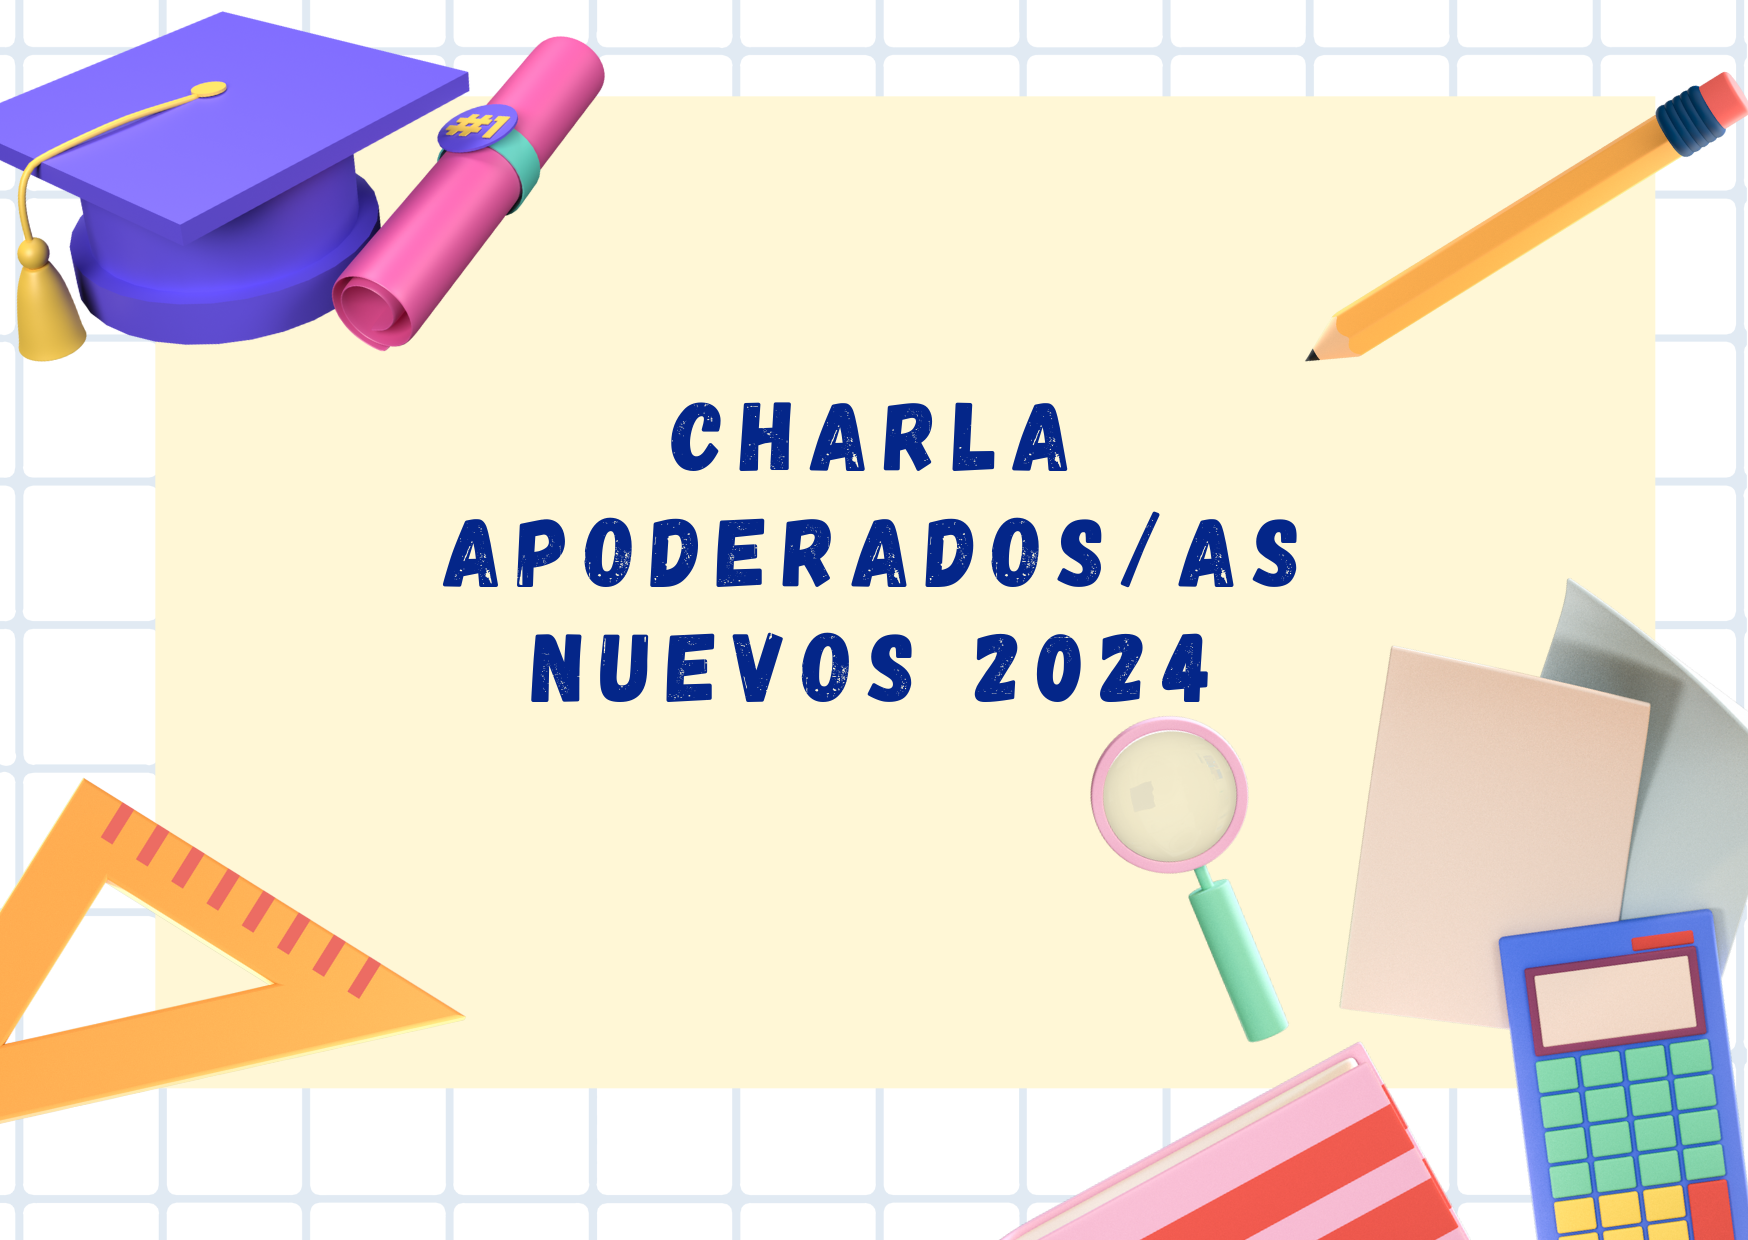 CHARLA APODERADOS/AS NUEVOS 2024